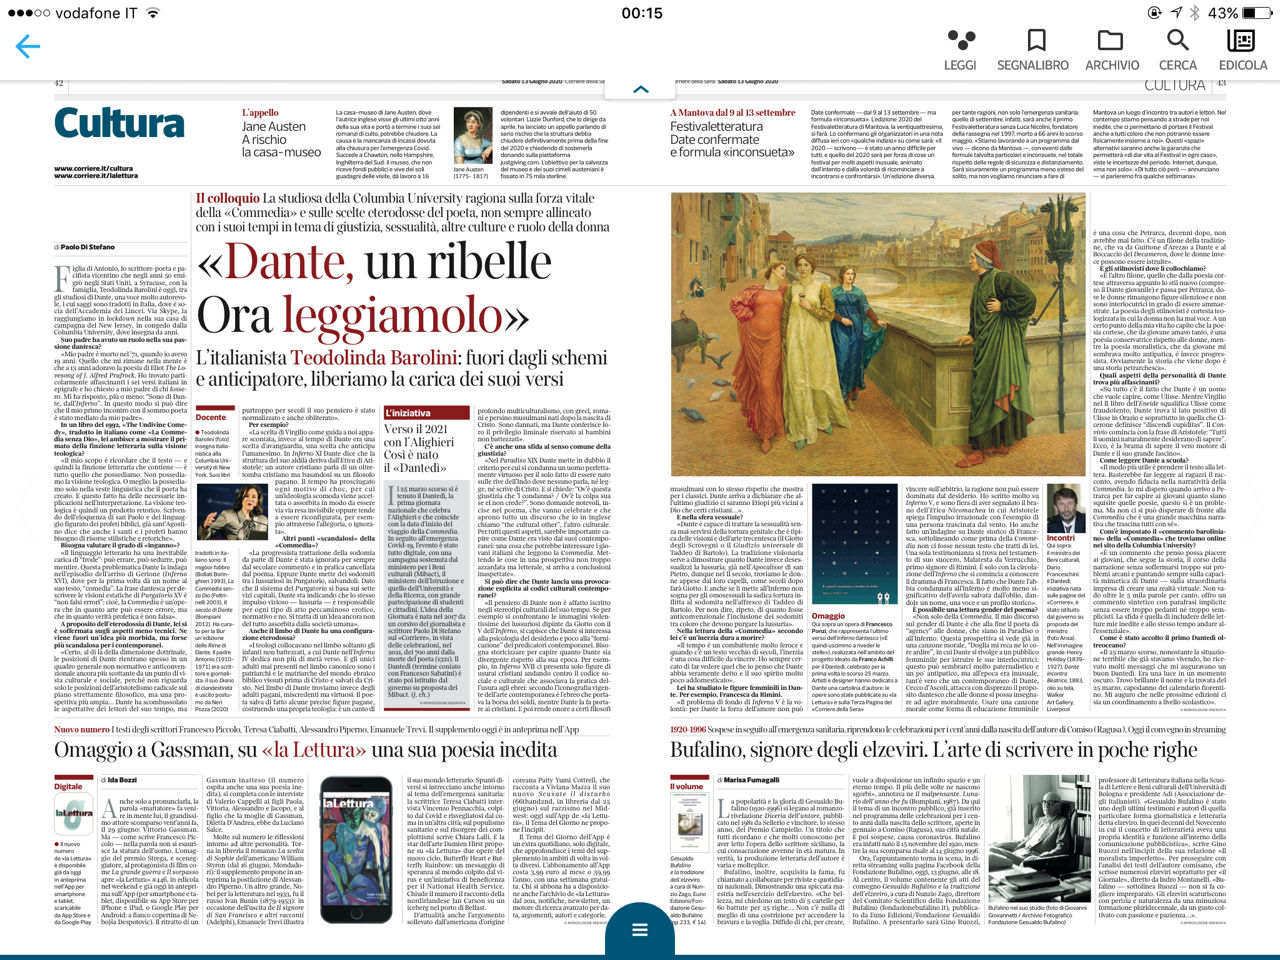 An interview with Teodolinda Barolini in Corriere della Sera, 6/13/20